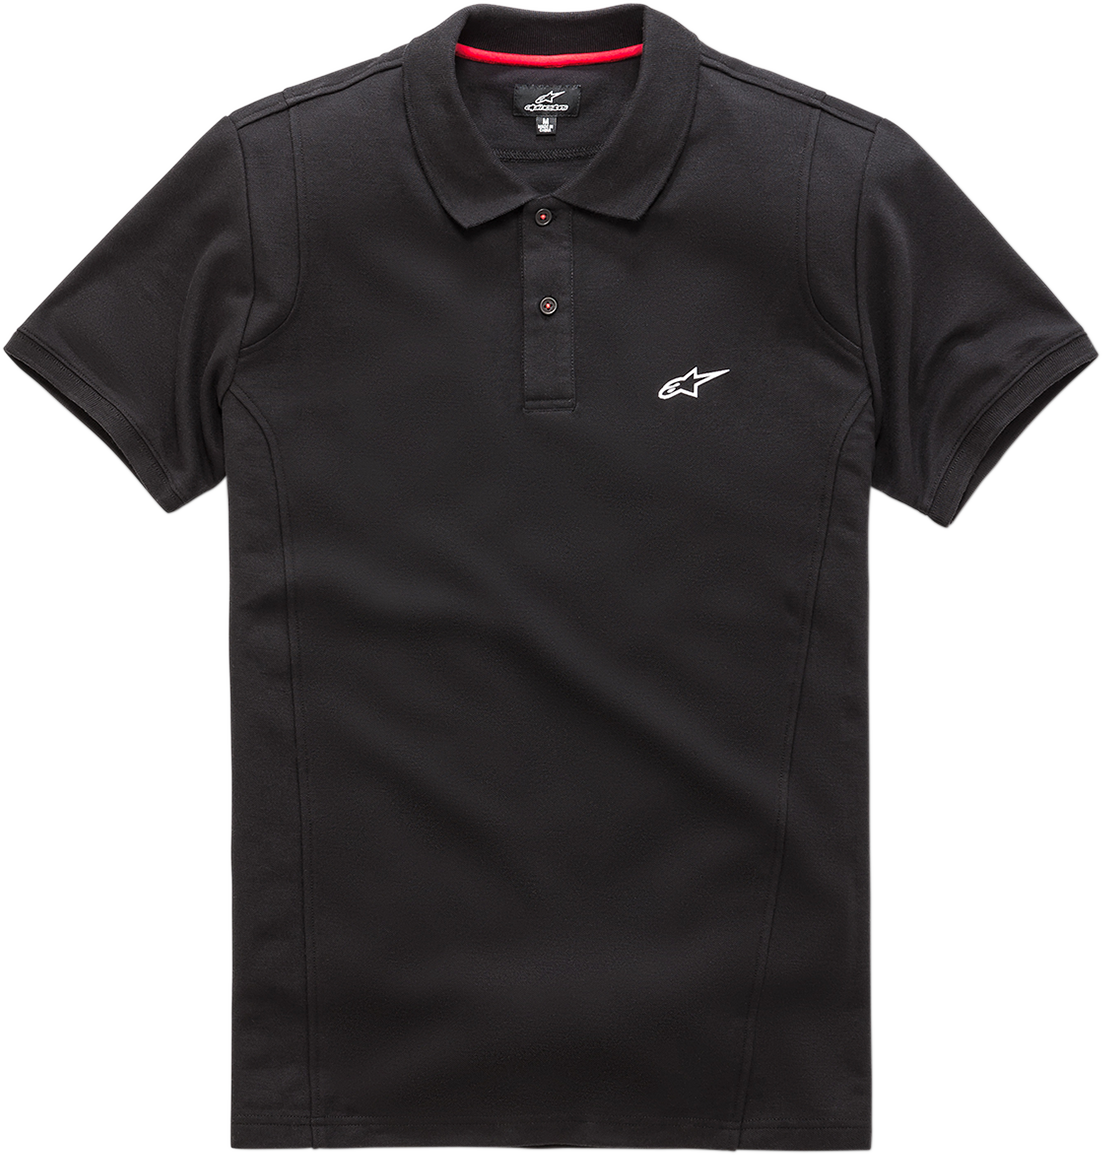 ALPINESTARS Capital Polo Shirt - Black - Large 1038-41000-10-L